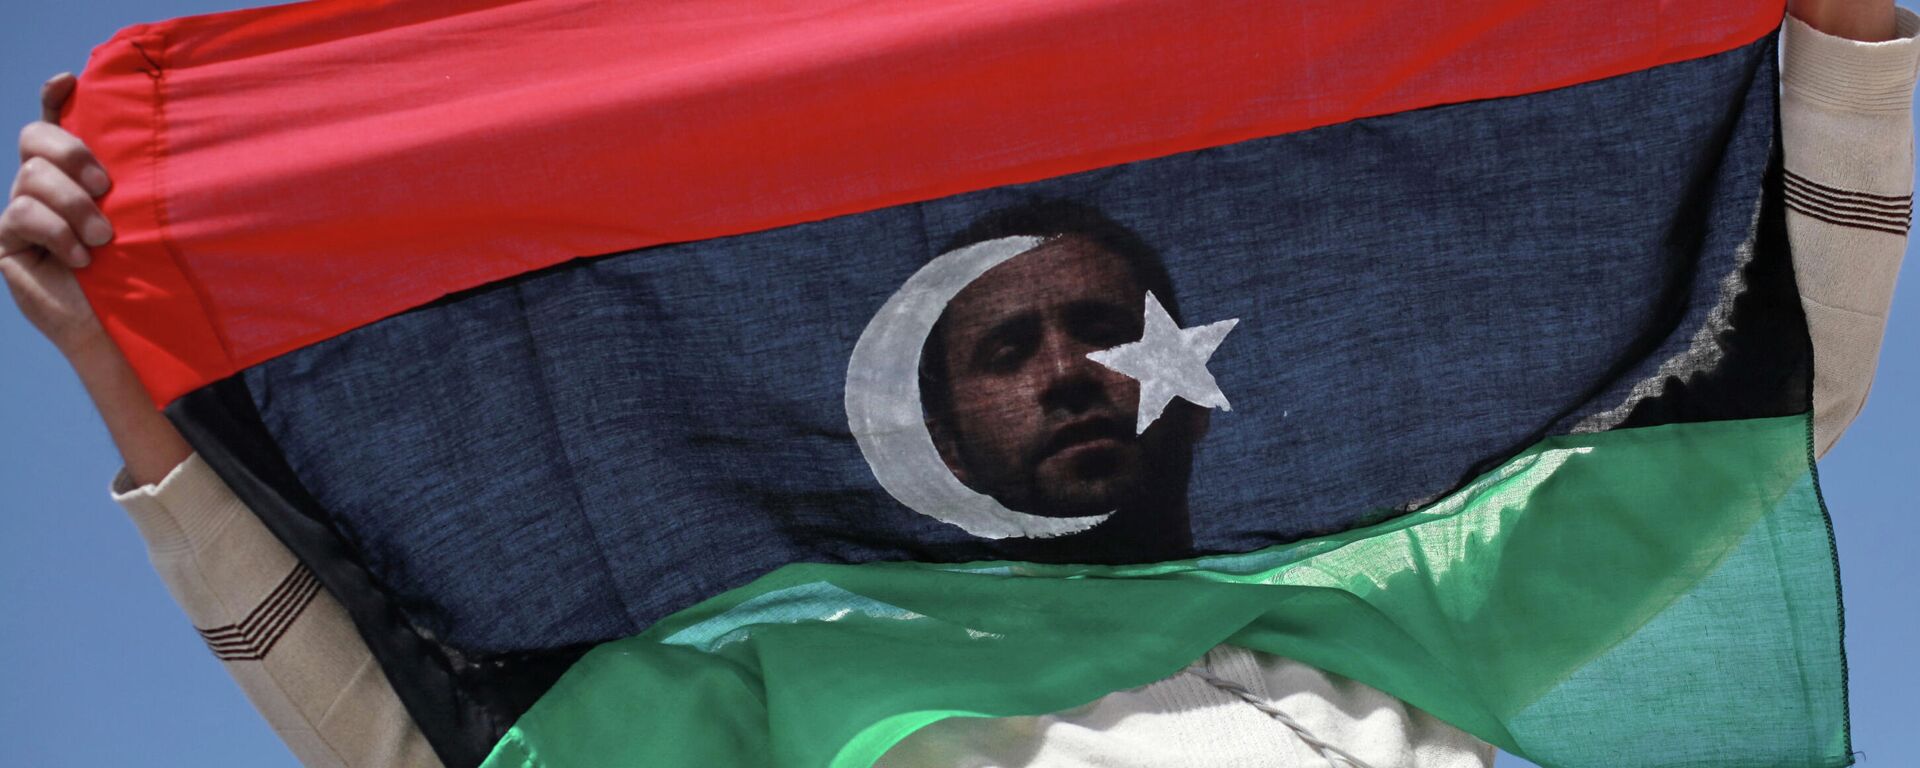 Un opositor con la bandera de Libia - Sputnik Mundo, 1920, 21.09.2021